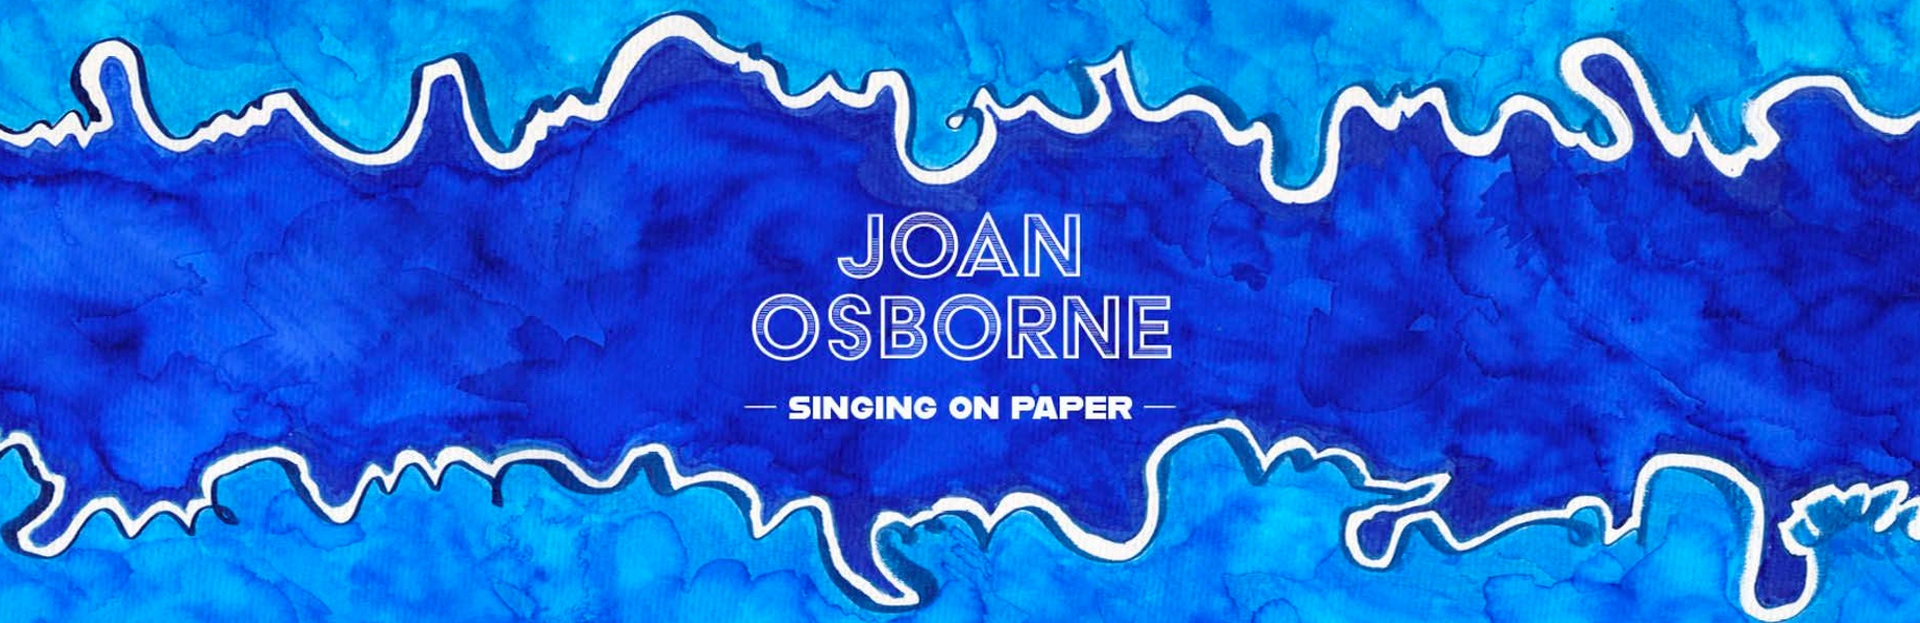 joan osborne tour setlist